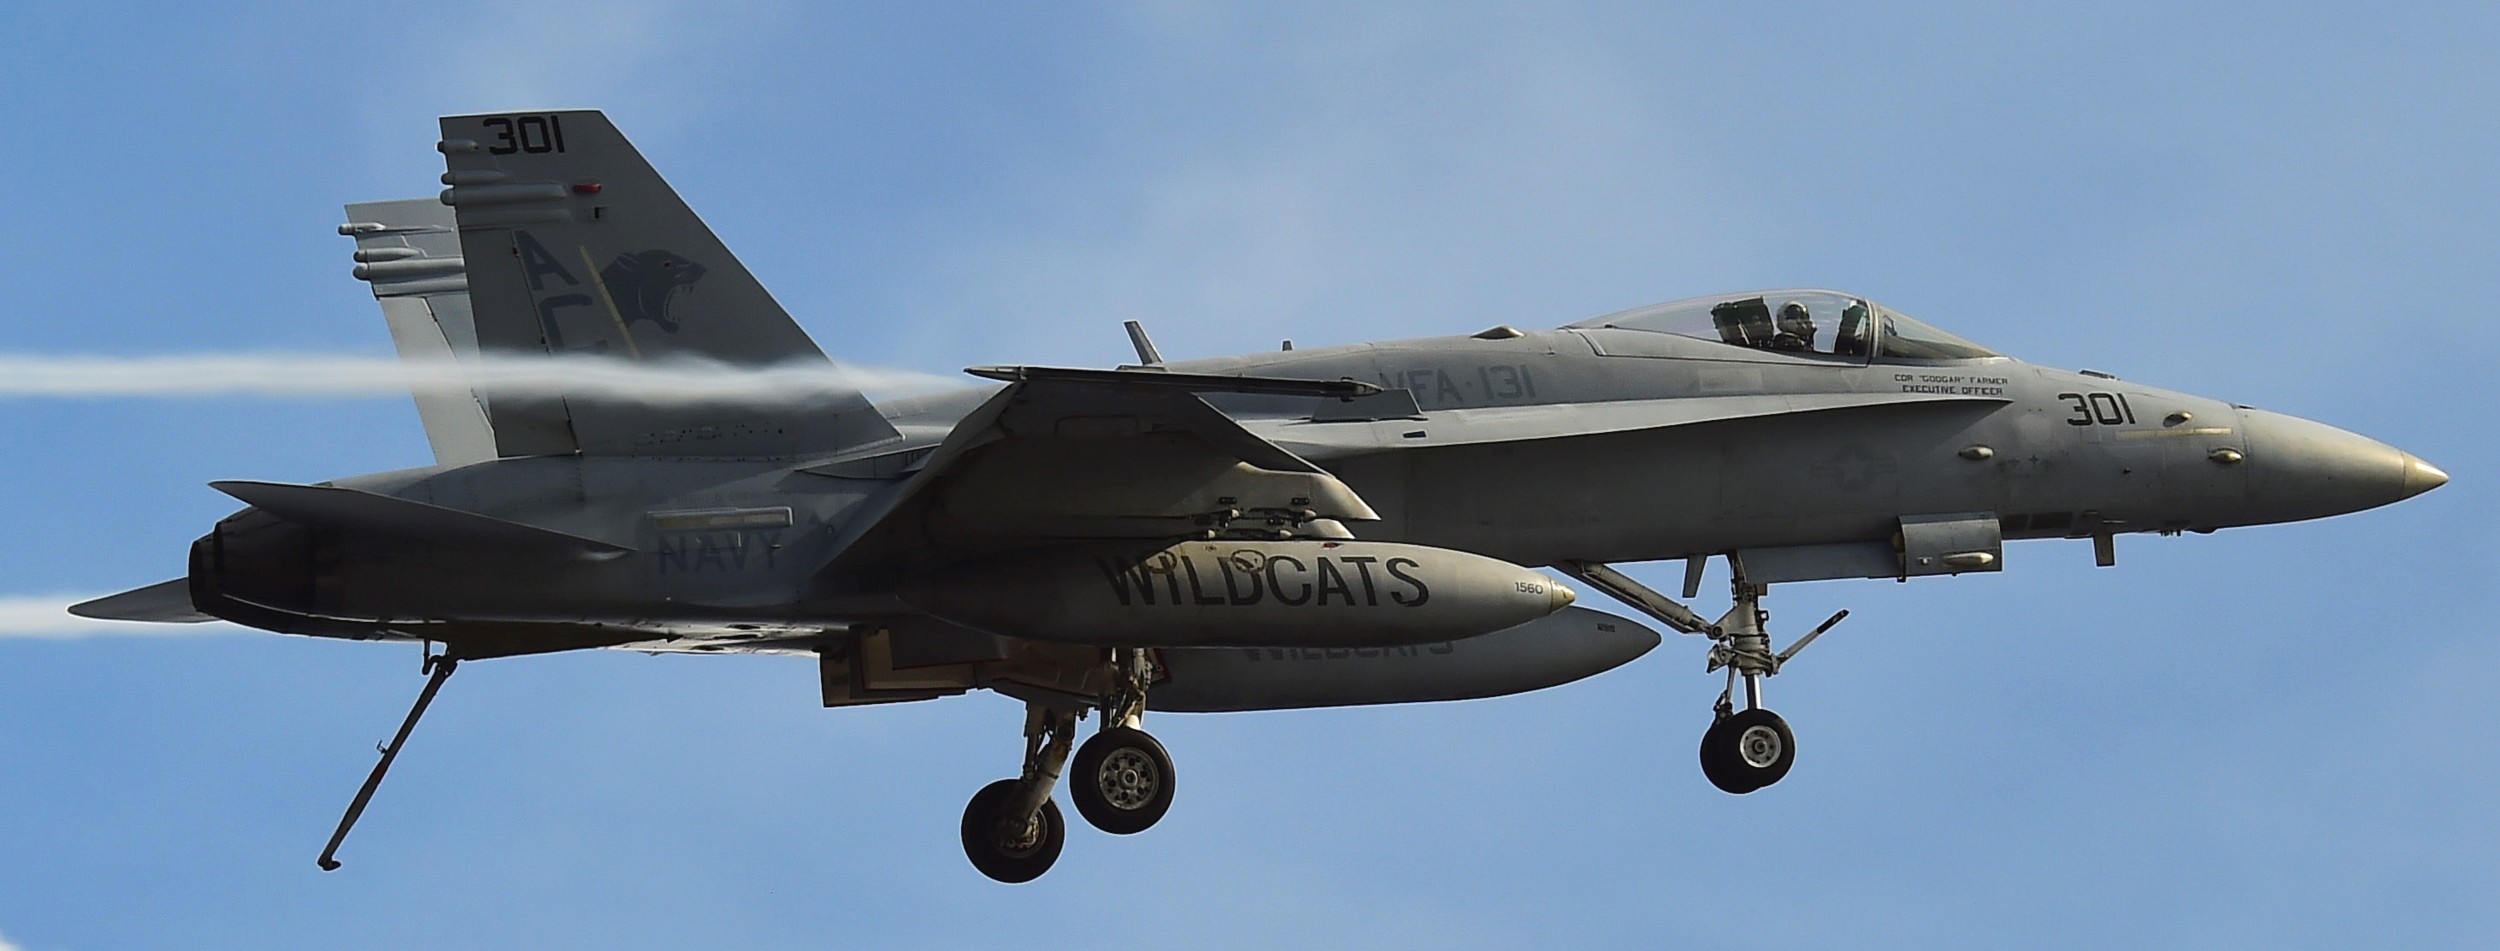 vfa-131 wildcats strike fighter squadron f/a-18c hornet cvw-3 uss dwight d. eisenhower cvn-69 2015 40